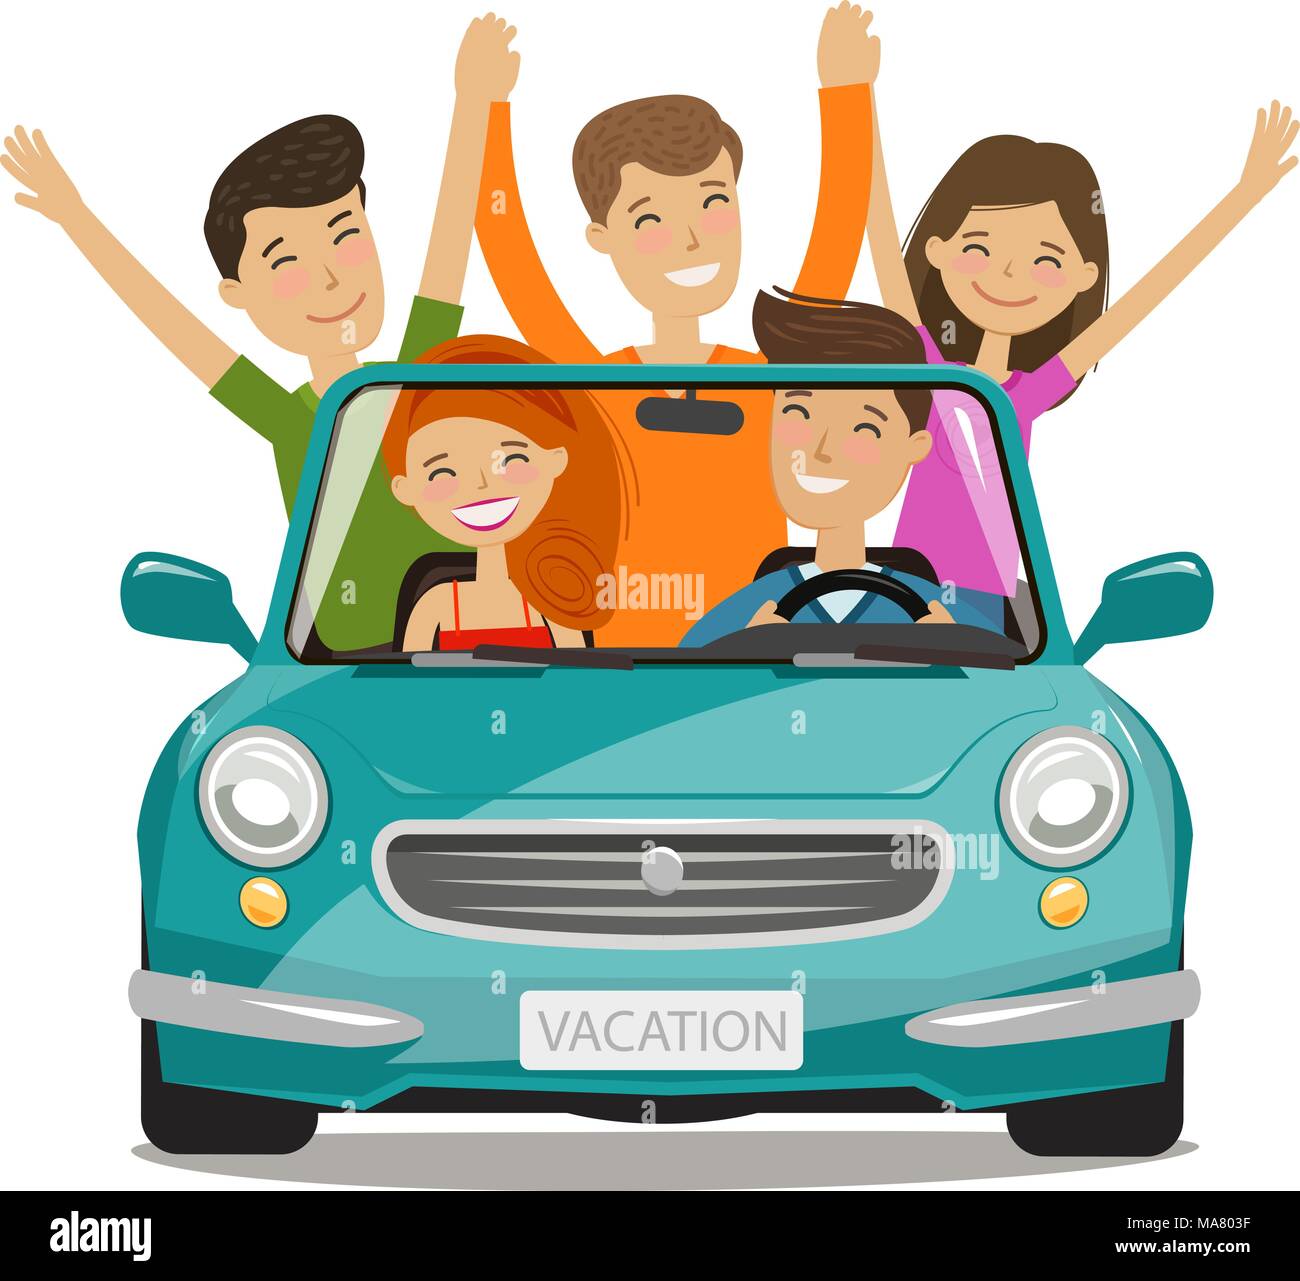 Urlaub, Reise Konzept. Glückliche junge Leute oder Freunde sind mit dem Auto unterwegs. Cartoon Vector Illustration Stock Vektor